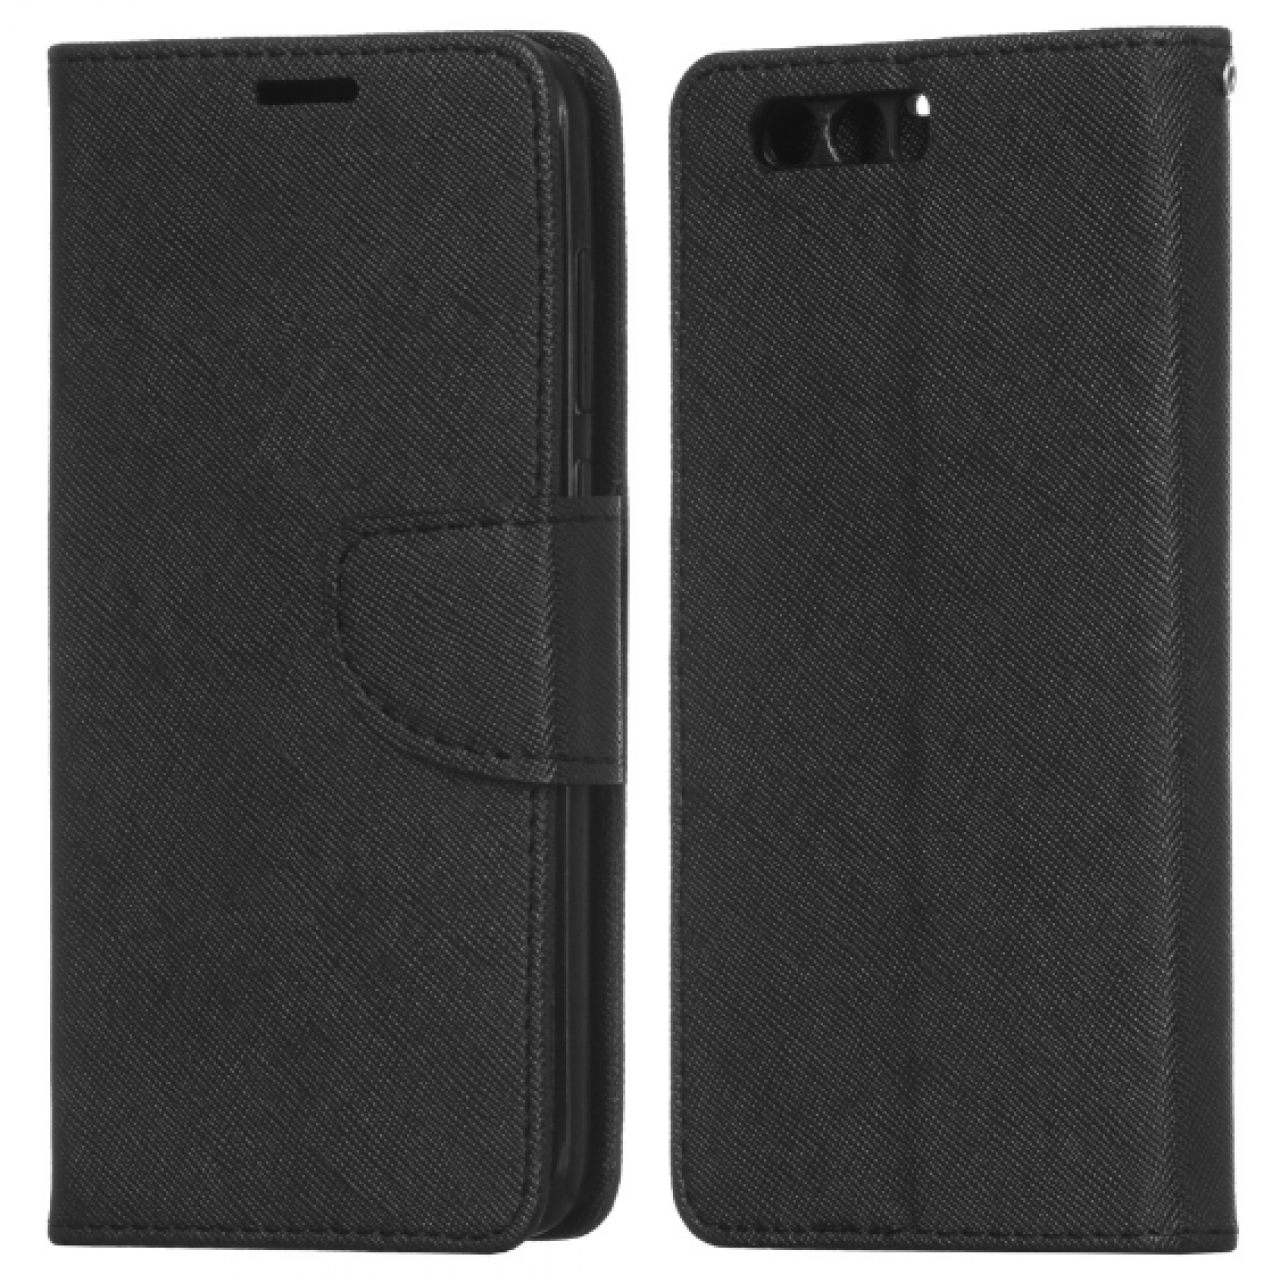 Θήκη Huawei Honor 9 PU Leather Πορτοφόλι flip Fancy Diary - 3799 - Μαύρο - OEM